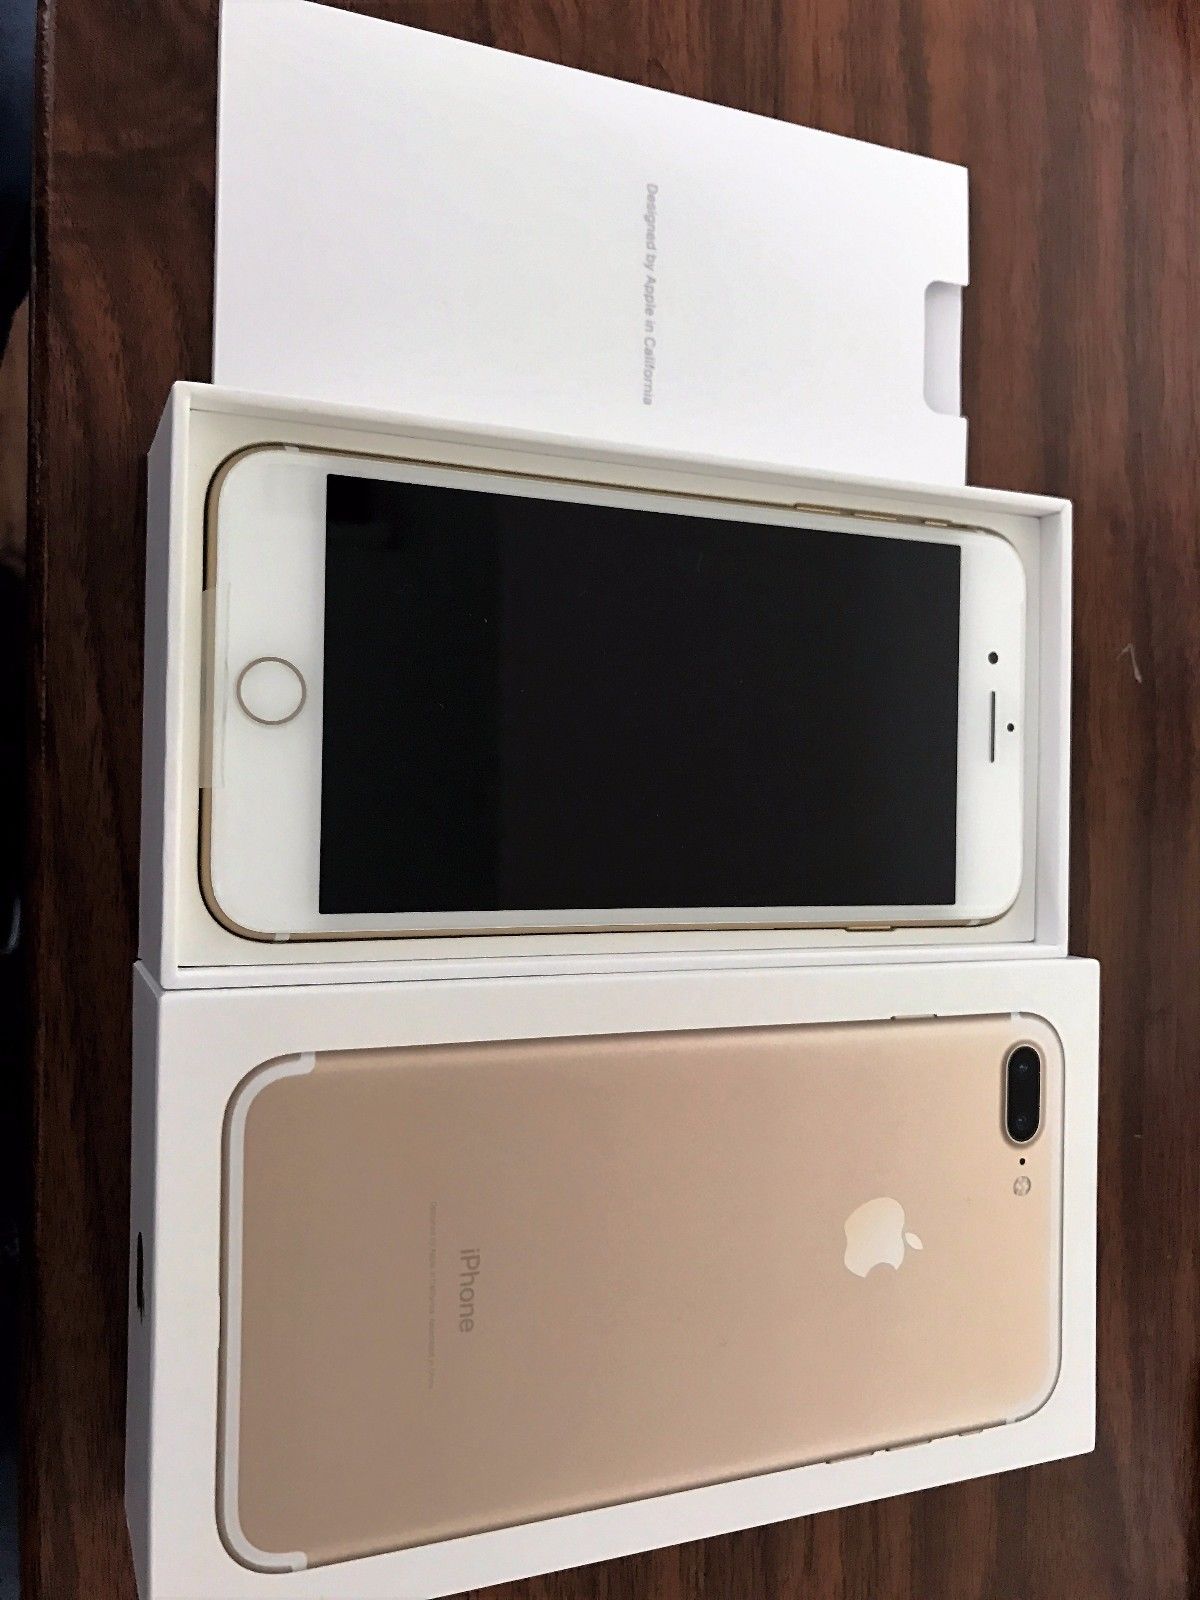 Apple iPhone 7 Plus, 32 gb, golg, золото - Мобильные телефоны,аксессуары